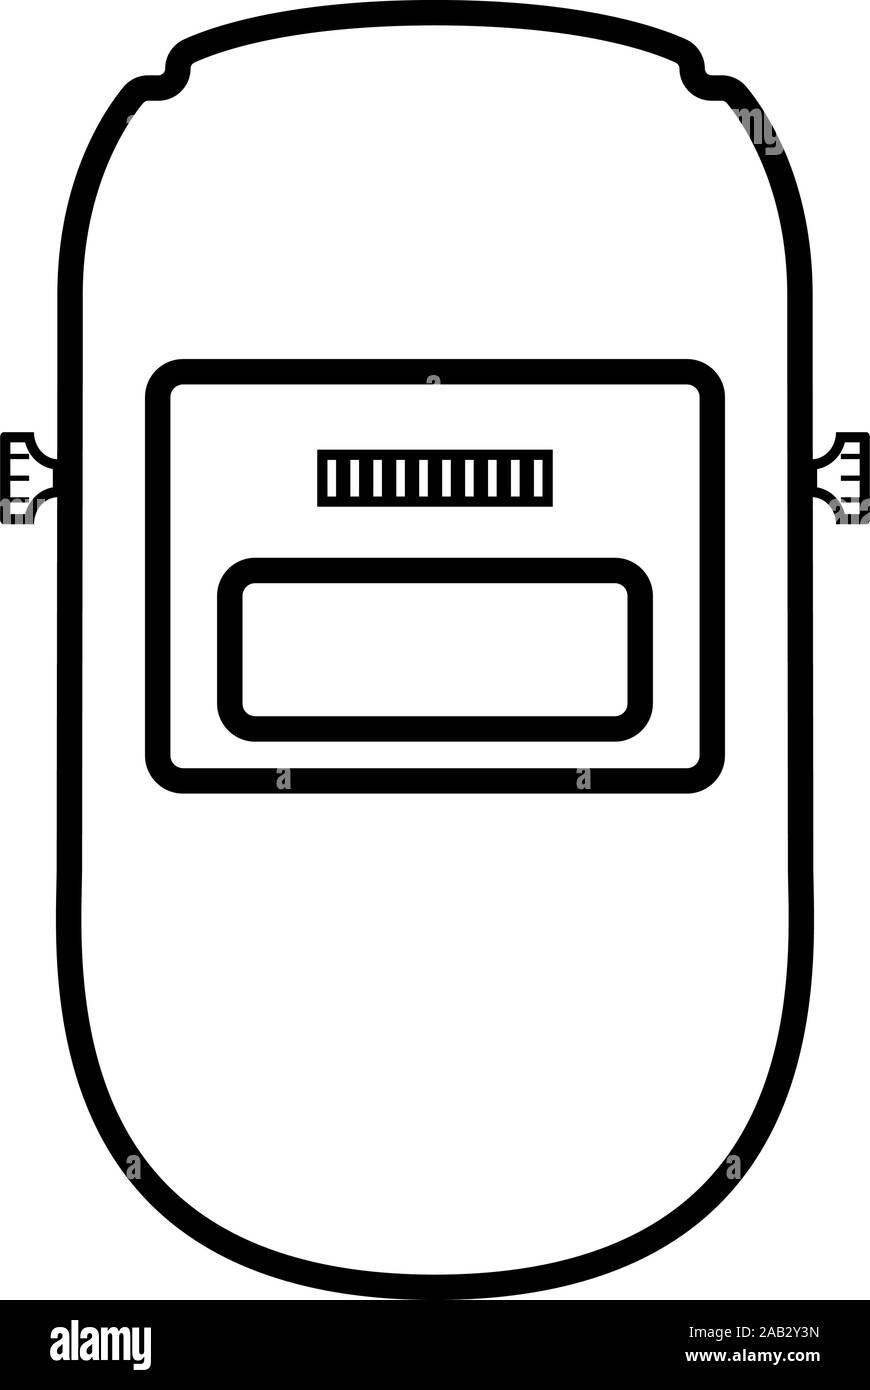 Schweißen Schweißer-Maske Gesichtsschutz individuellen Schutz Symbol  outline Schwarz Vector Illustration Flat Style simple Image  Stock-Vektorgrafik - Alamy